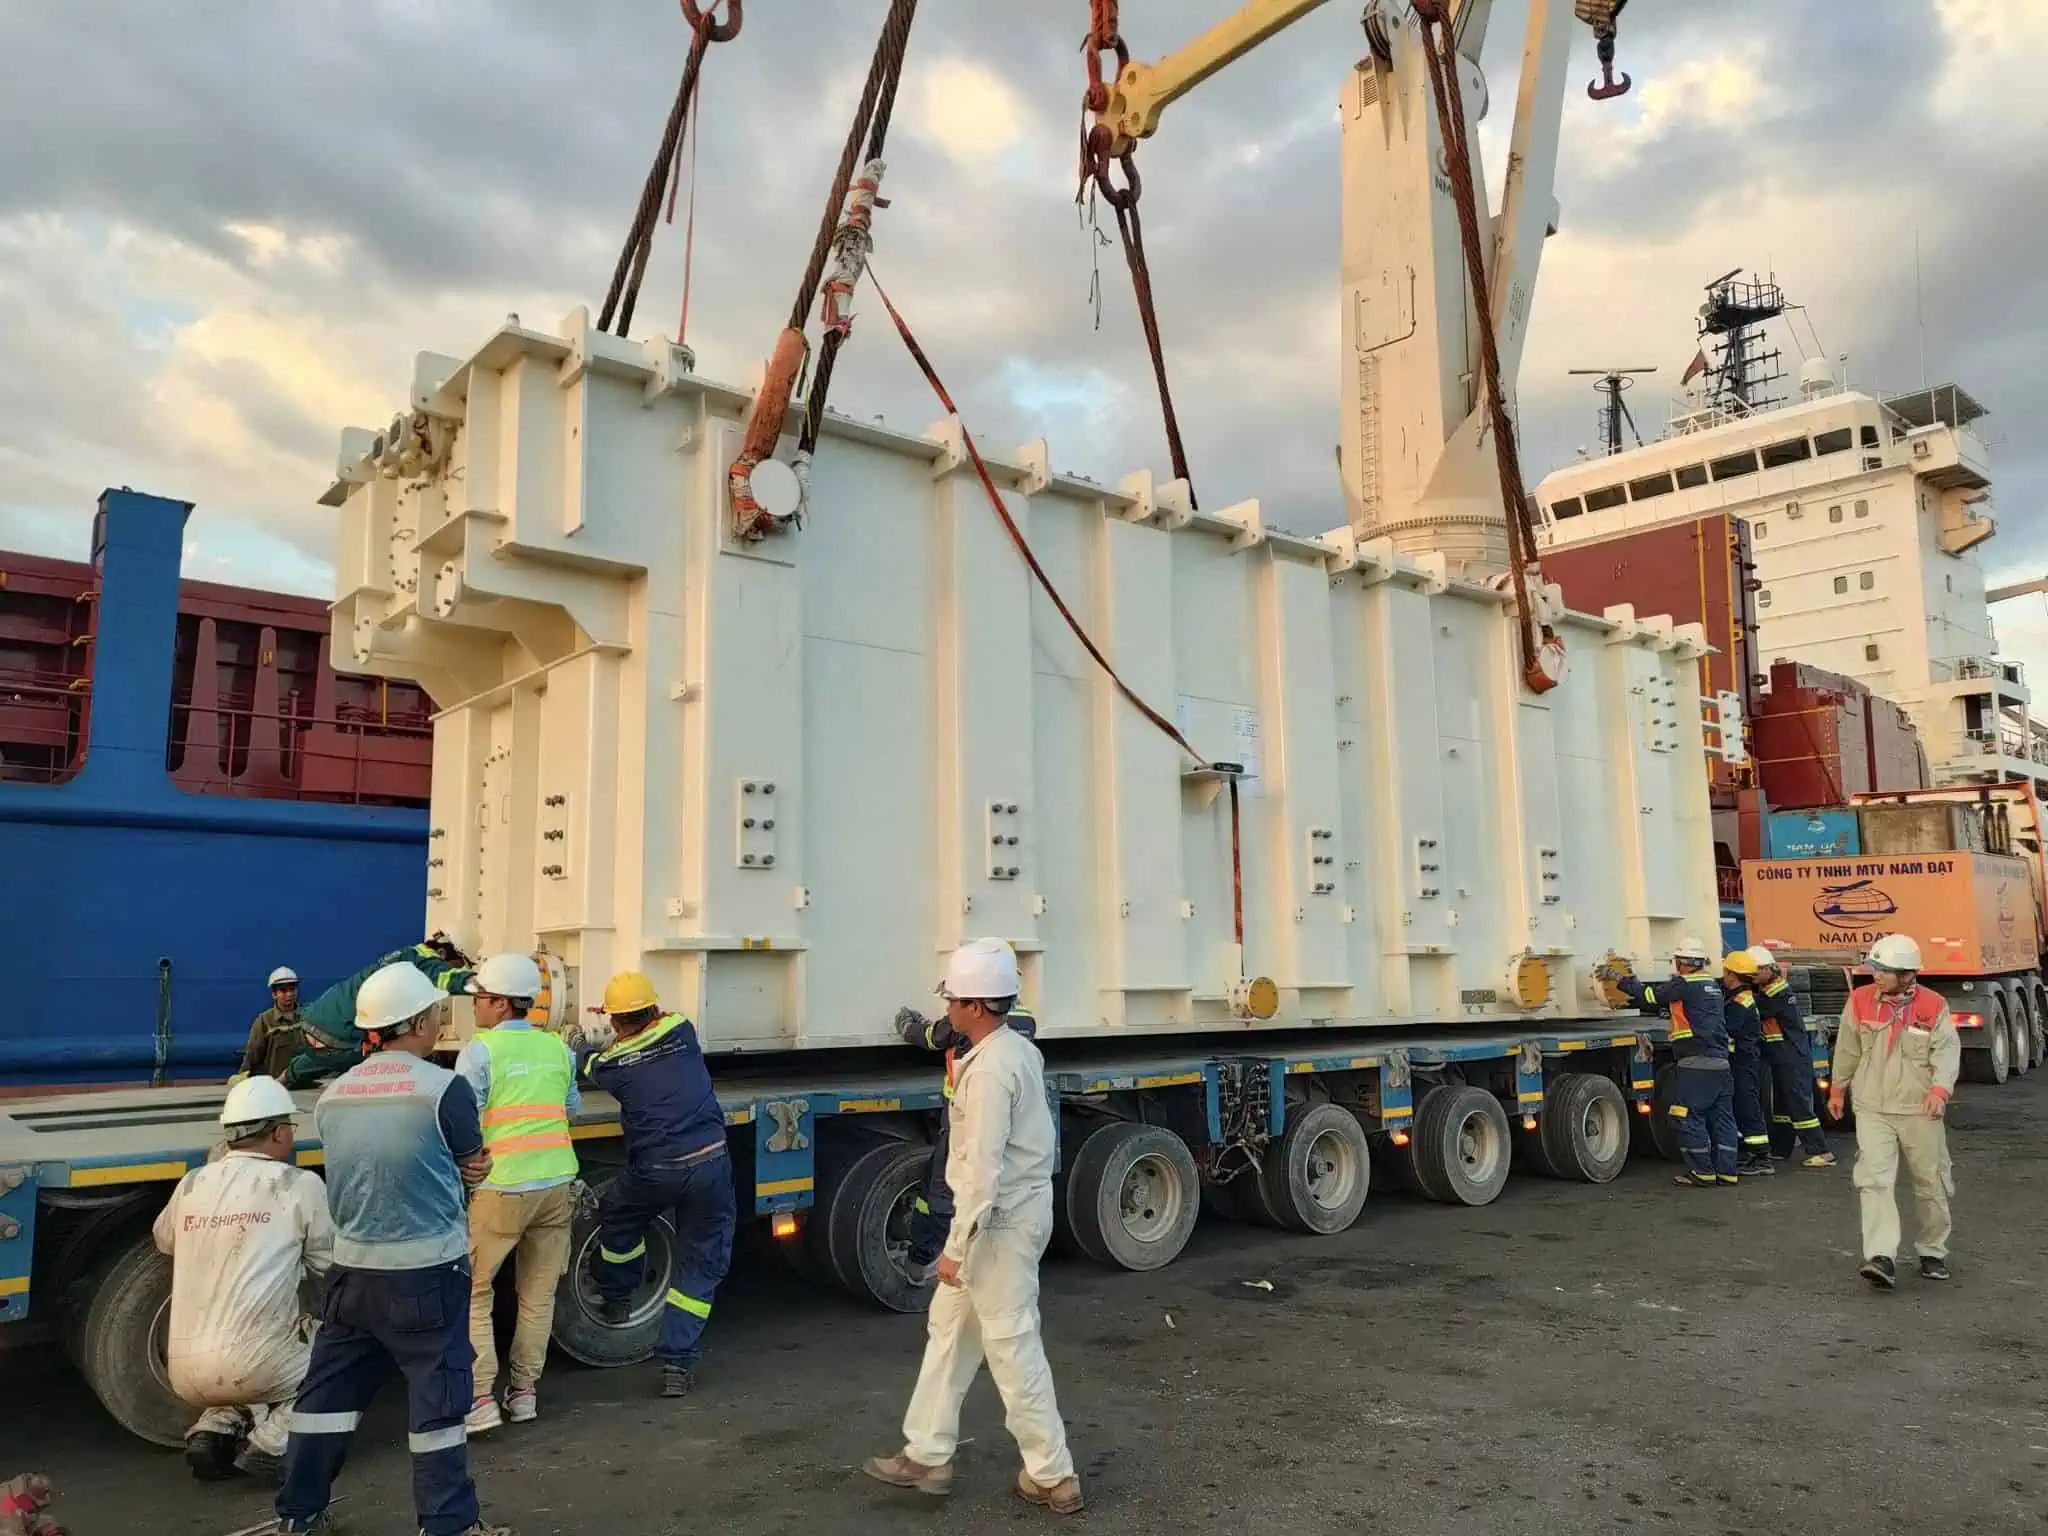 Cán bộ trực ban Cảng Tân Thuận đang điều hàng công nhân phối hợp cùng các bên liên quan đưa mã hàng từ tàu xuống xe vận chuyển chuyên dụng